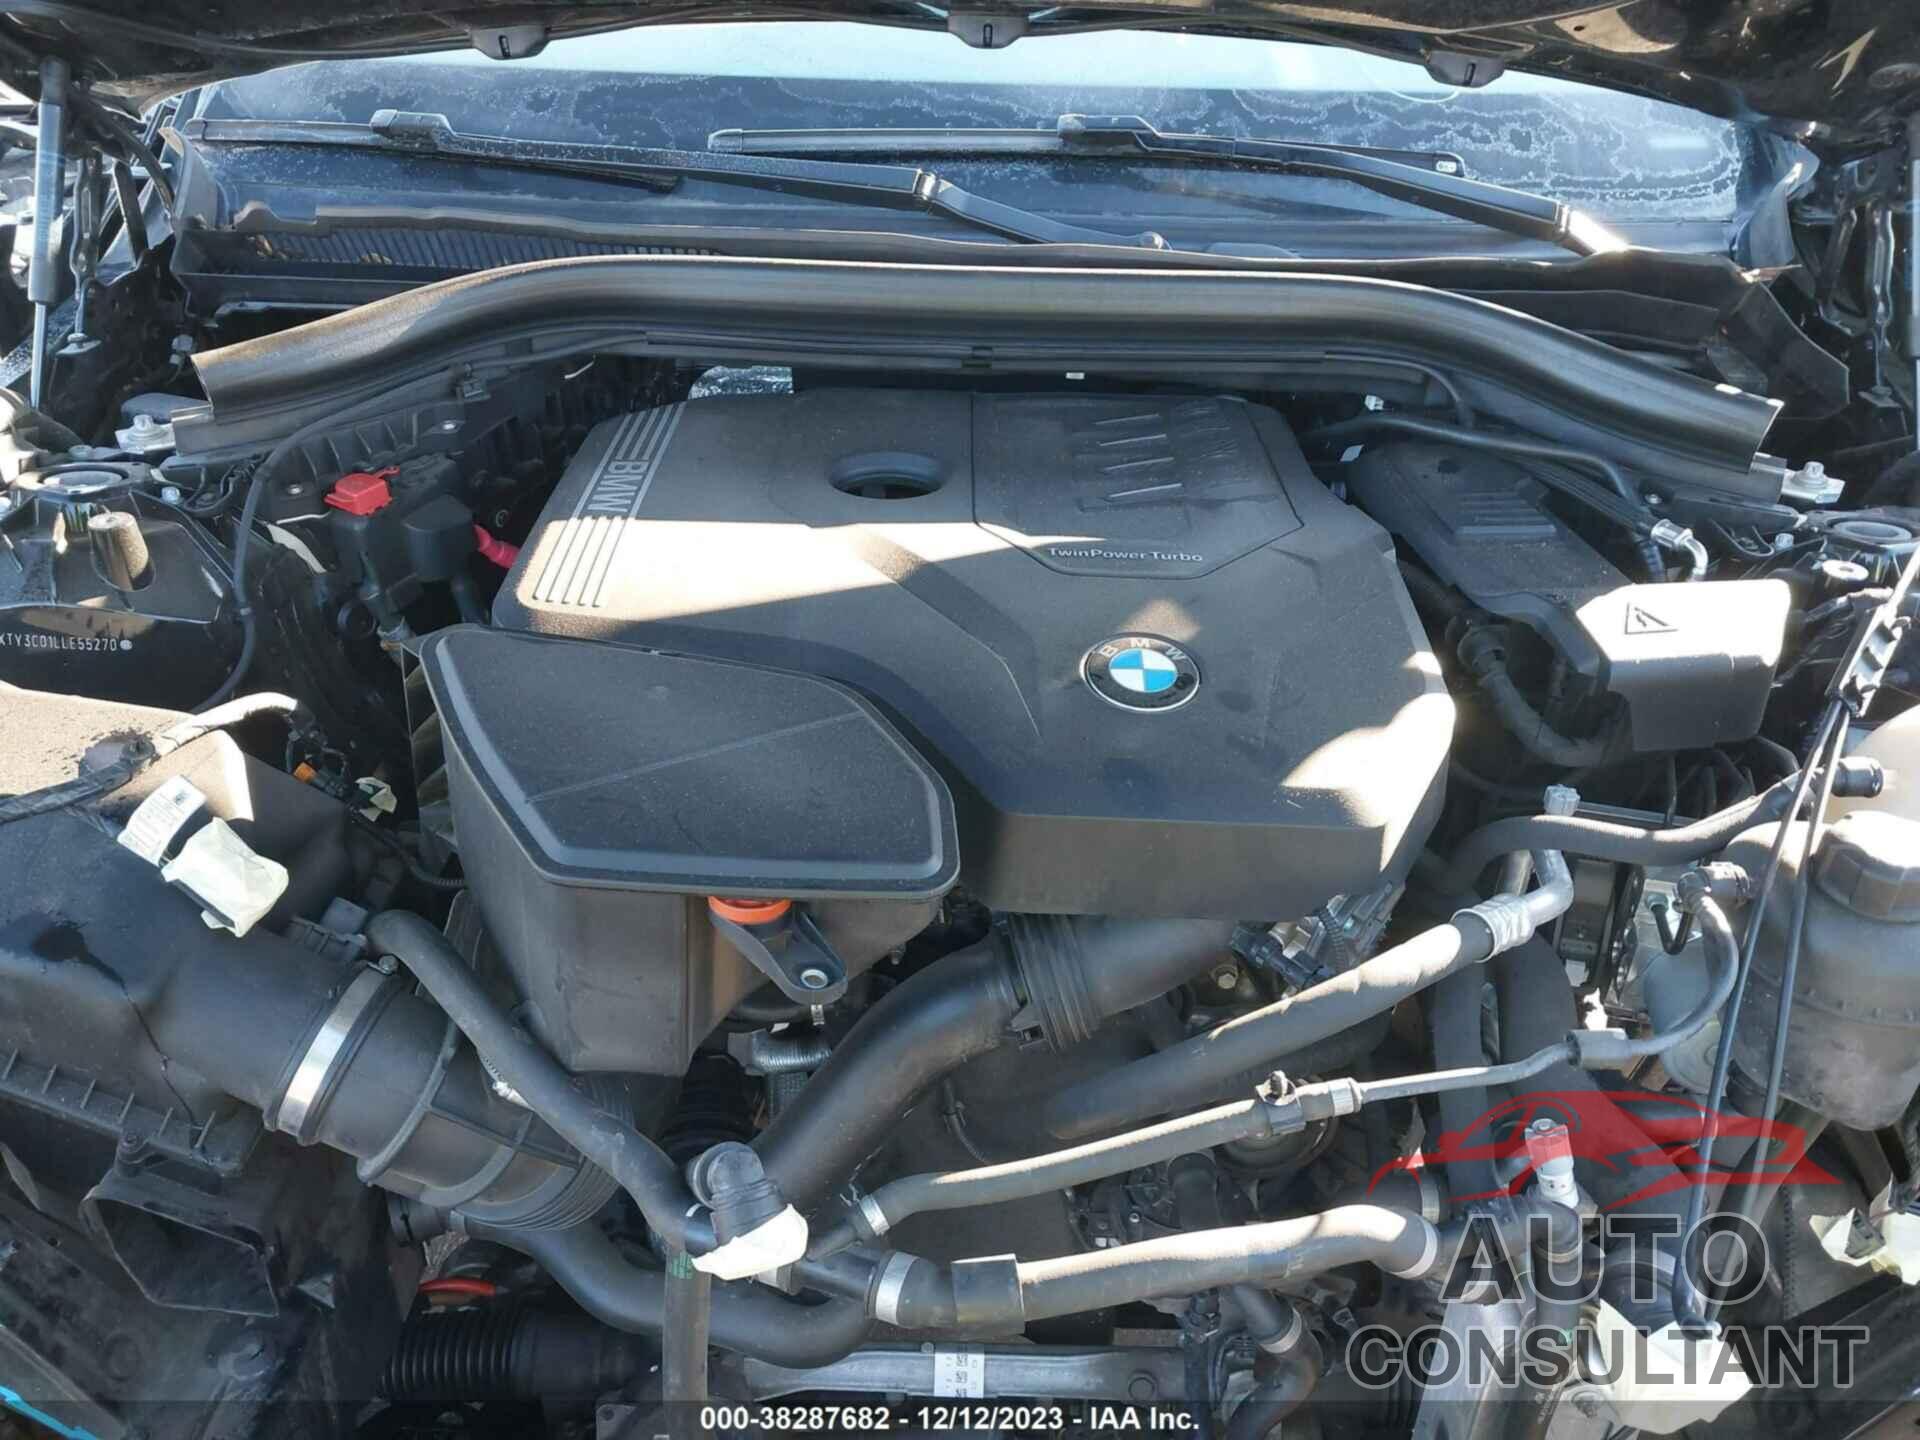 BMW X3 2020 - 5UXTY3C01LLE55270